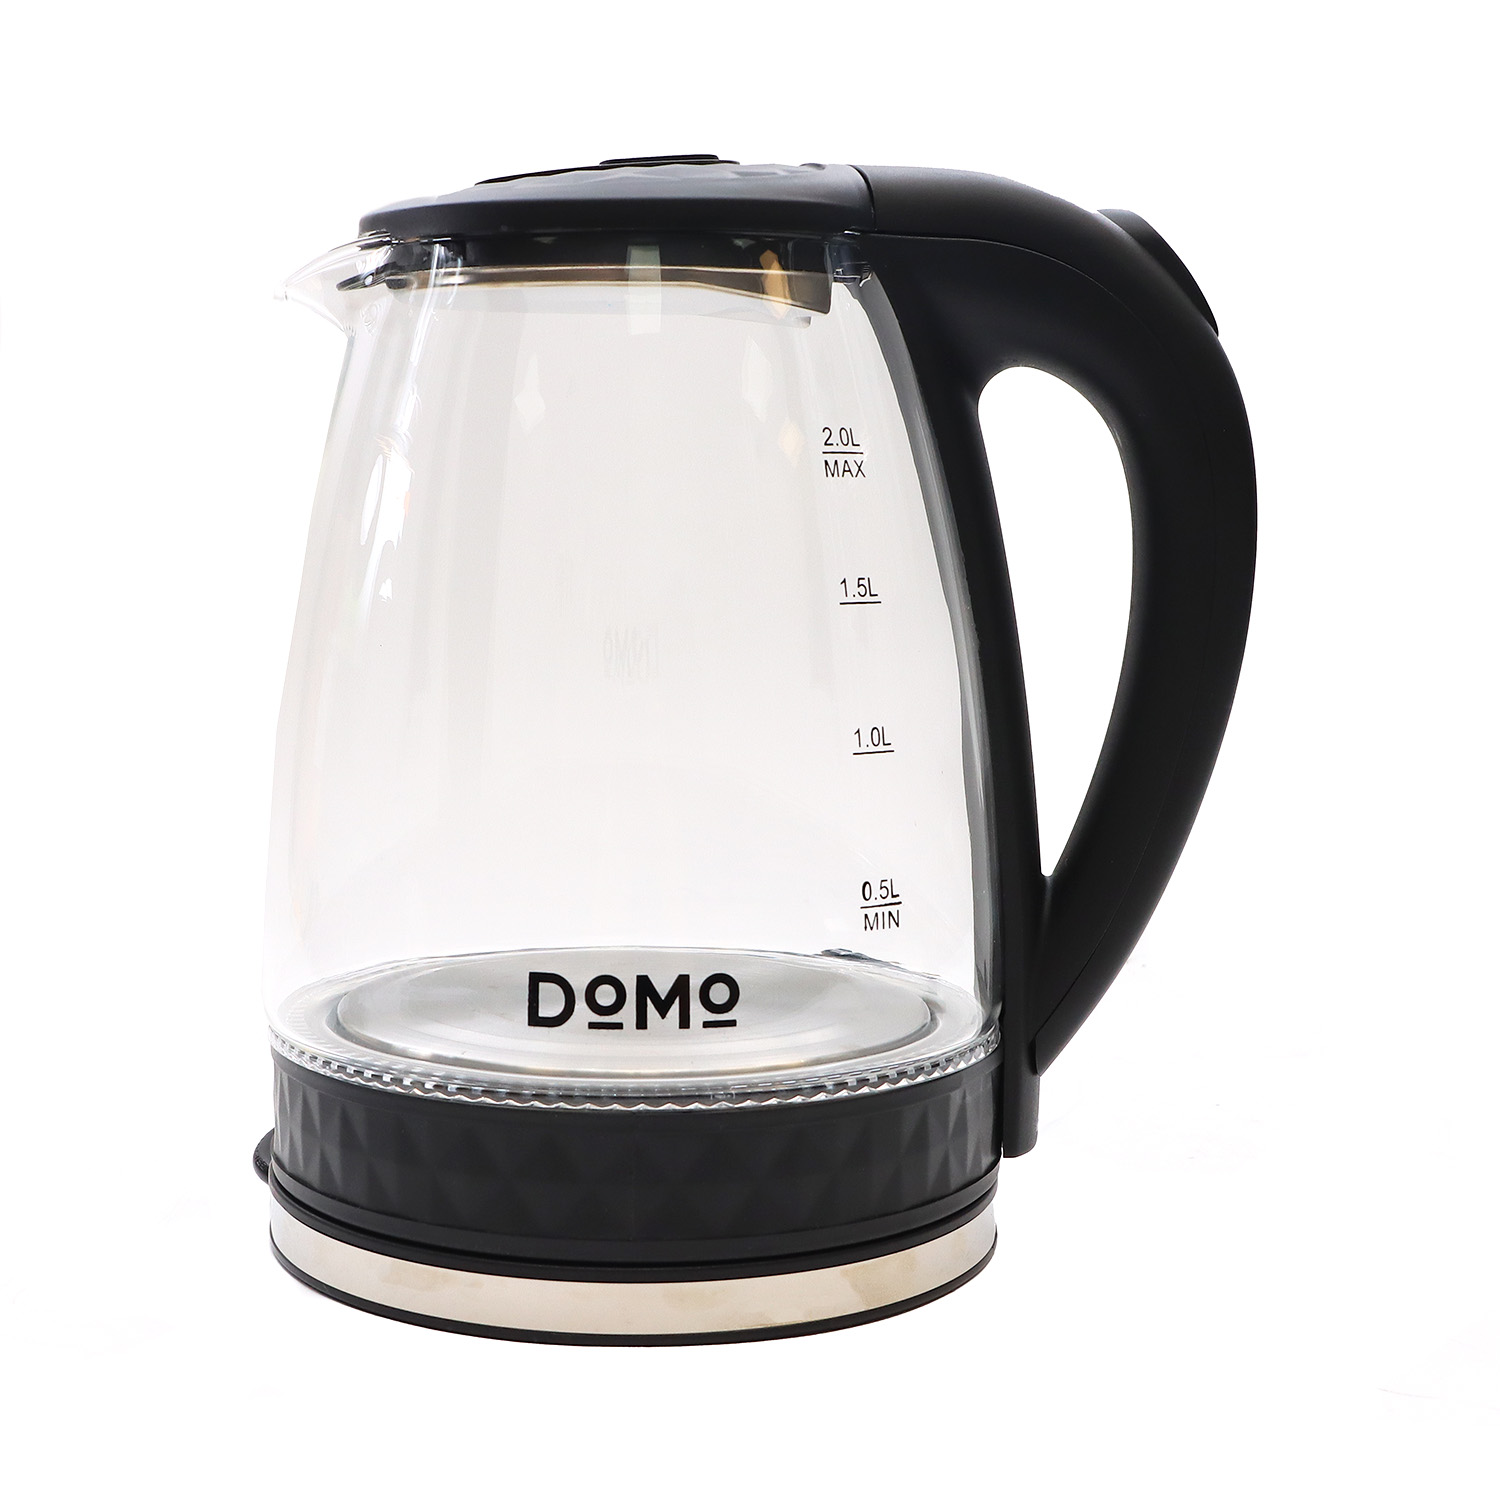 Чайник DOMO SML1802 2л. 2 кВт, стекло/пластик, прозрачный/черный (SML1802GL) плохая упаковка, отколота часть пластика на ручке, не эксплуатировался